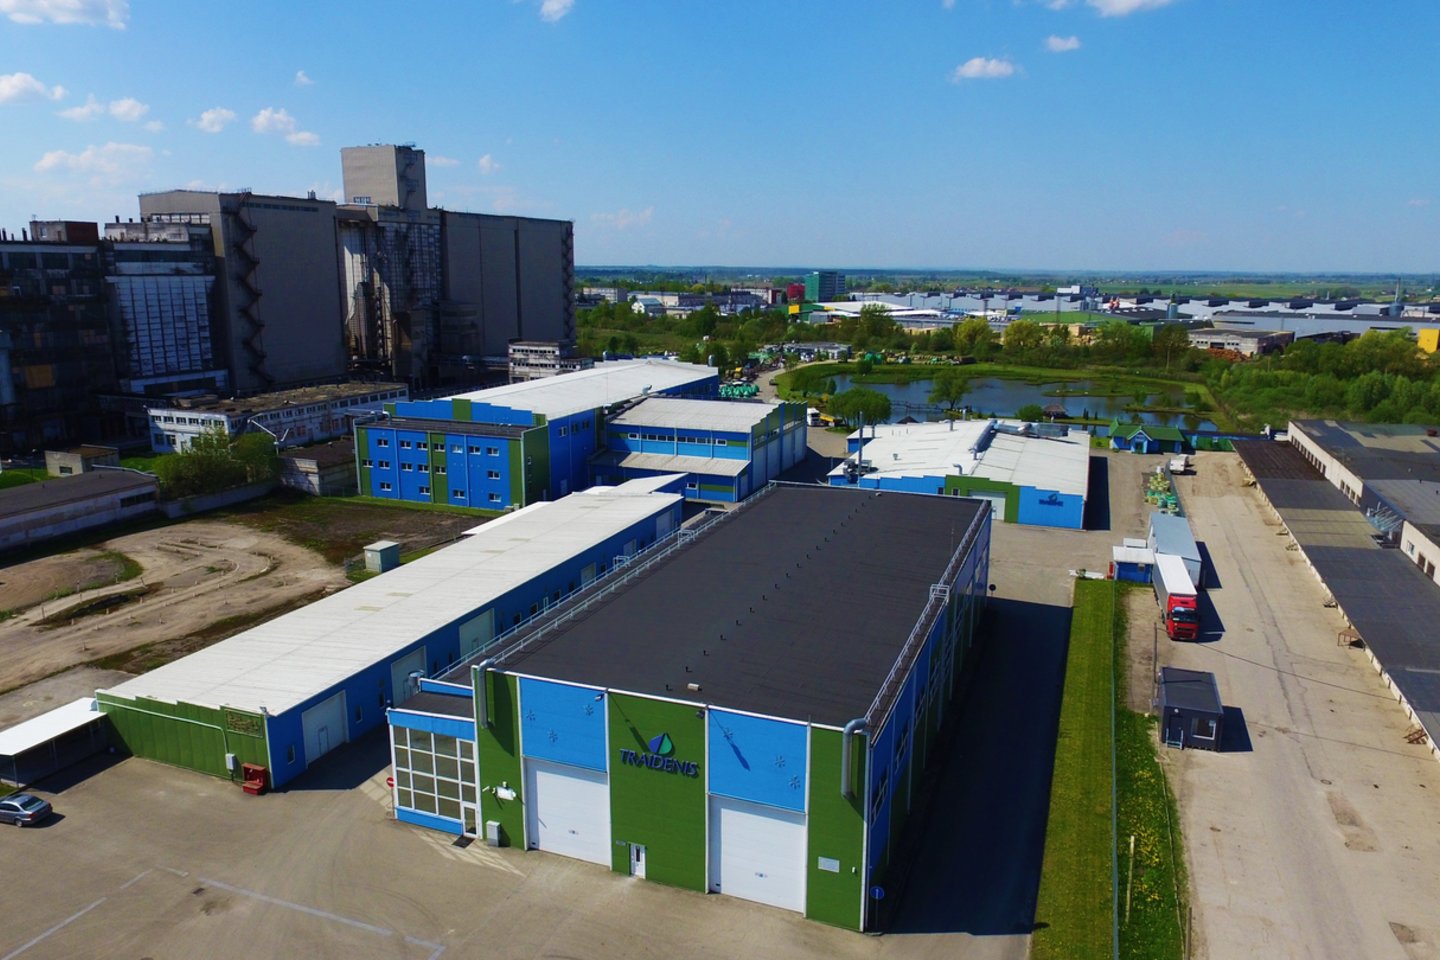 Gamybinė įmonė „Traidenis“ įkurta 1996 m., kuri pirmoji Lietuvoje pradėjo gaminti nuotekų valymo įrenginius ir talpas iš stiklaplasčio.<br>Archyvo nuotr.